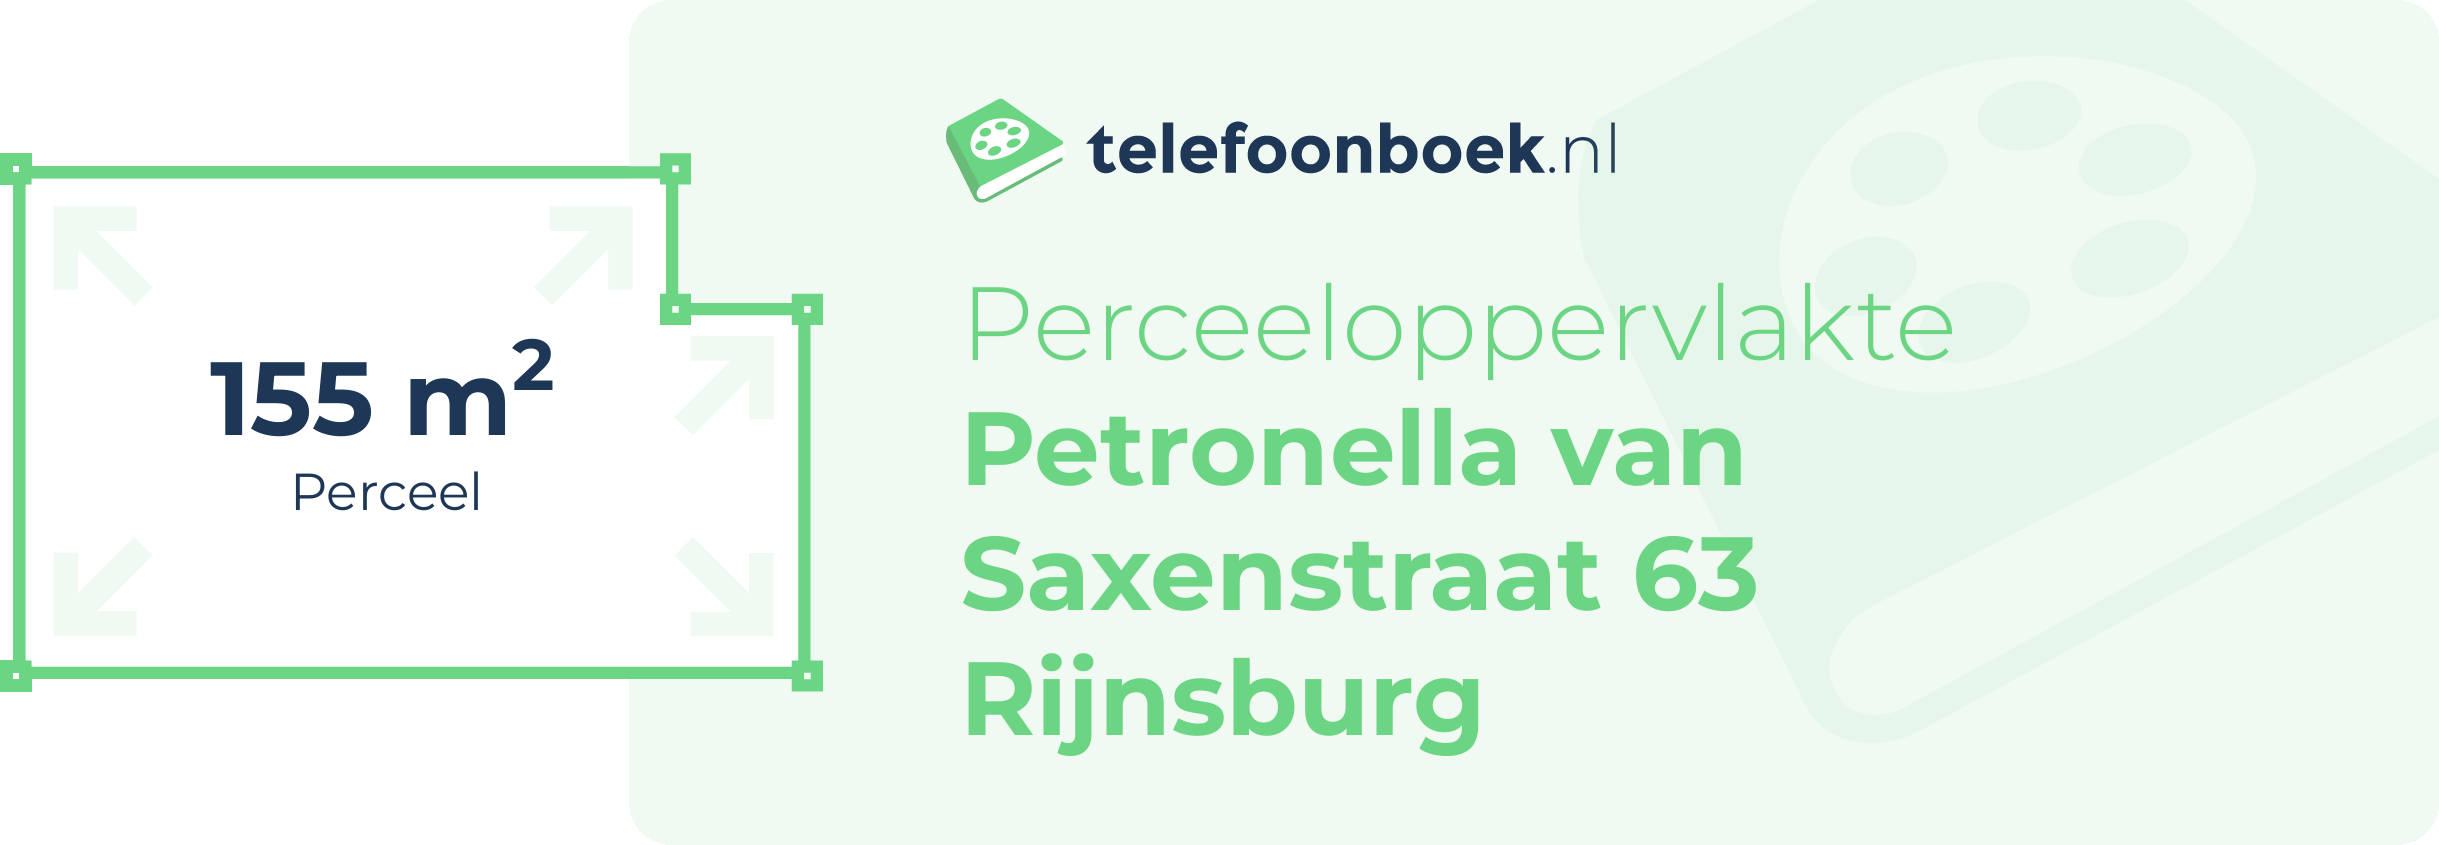 Perceeloppervlakte Petronella Van Saxenstraat 63 Rijnsburg